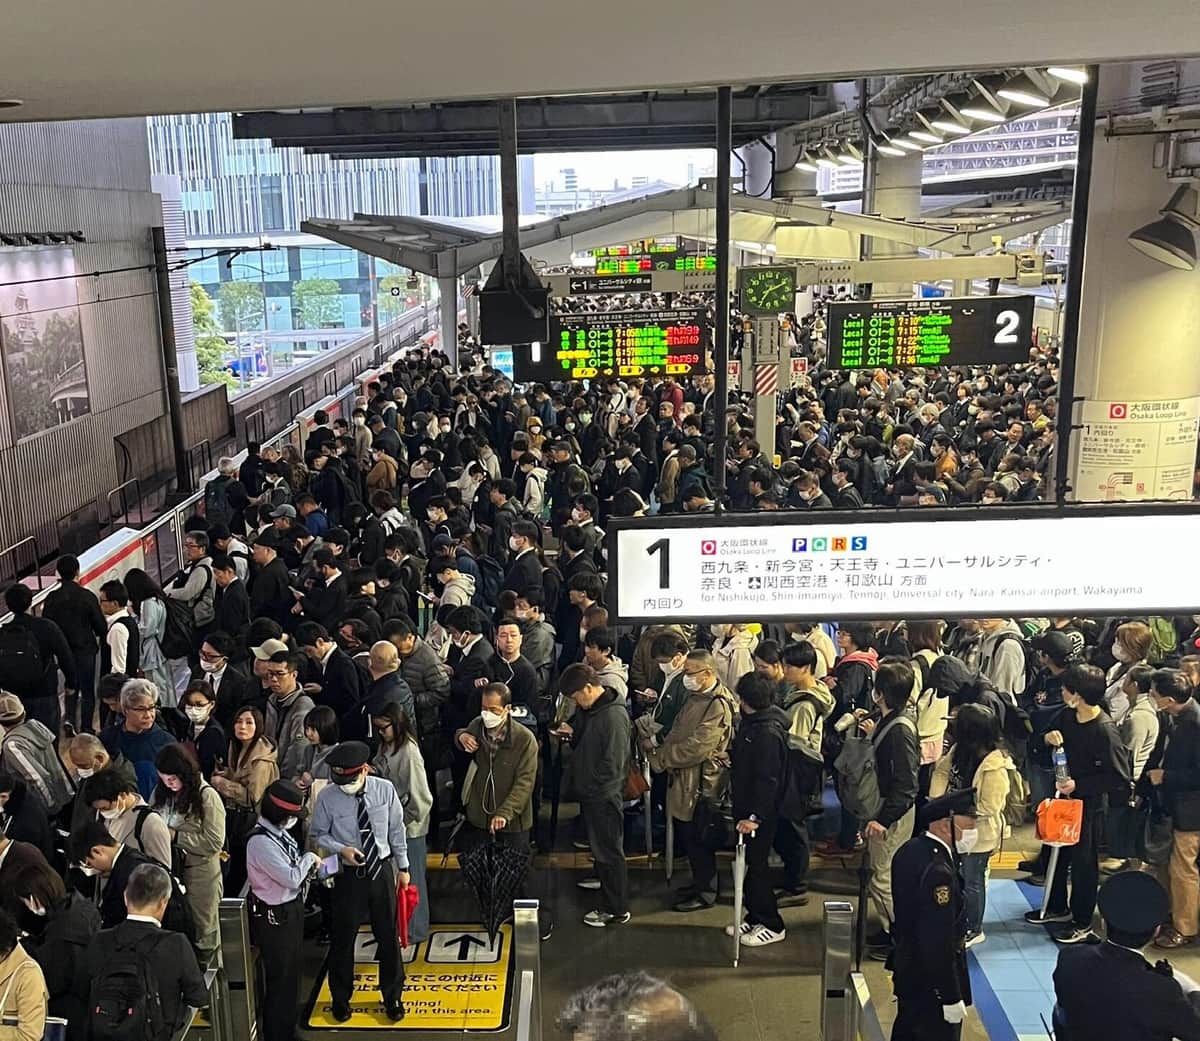 混雑する大阪駅の環状線のホーム。オオダテ チアキ@美容業界で働くサラリーマン（@chiakiodate）さん提供